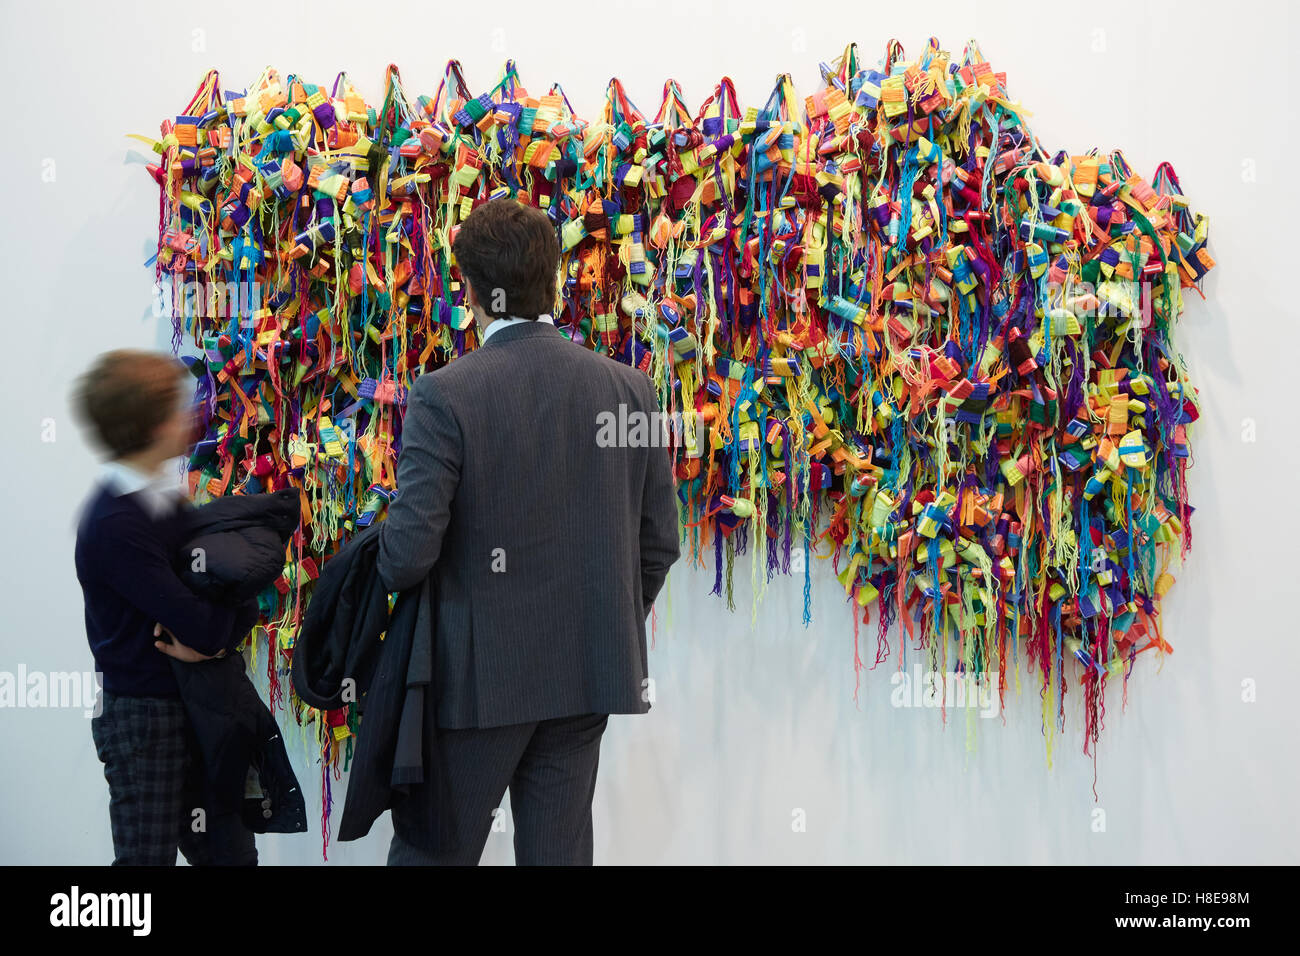 Uomo e ragazzo nei pressi di vivaci scultura durante Artissima, fiera di arte contemporanea apertura a Torino Foto Stock